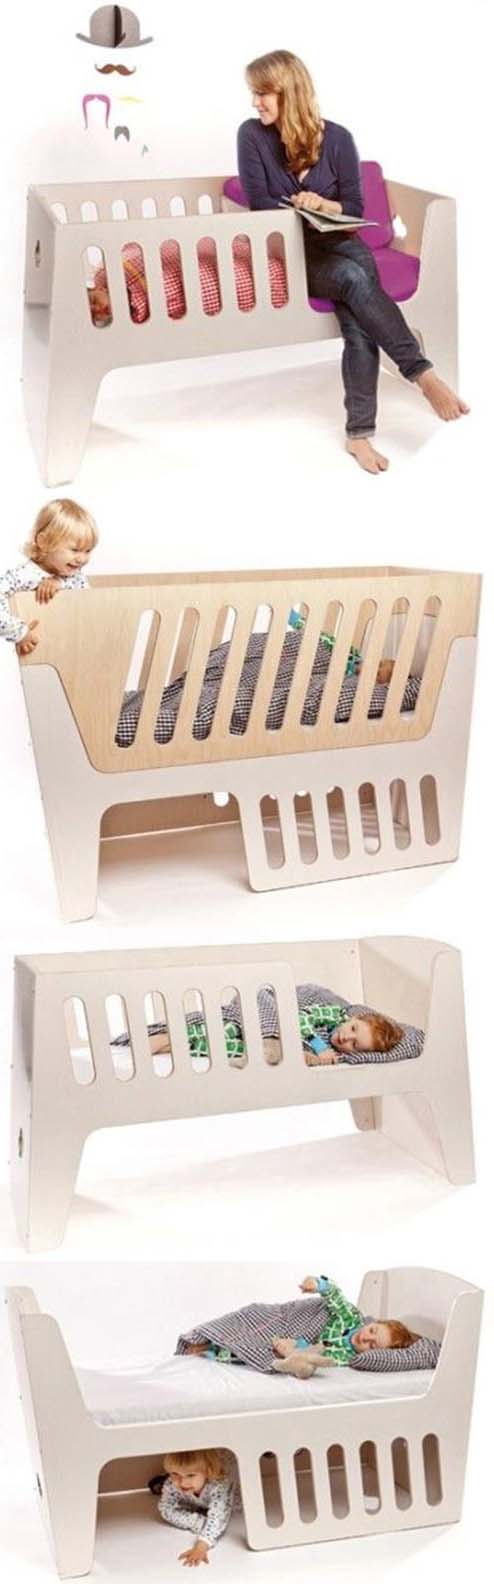 genius idea product design for parents and child